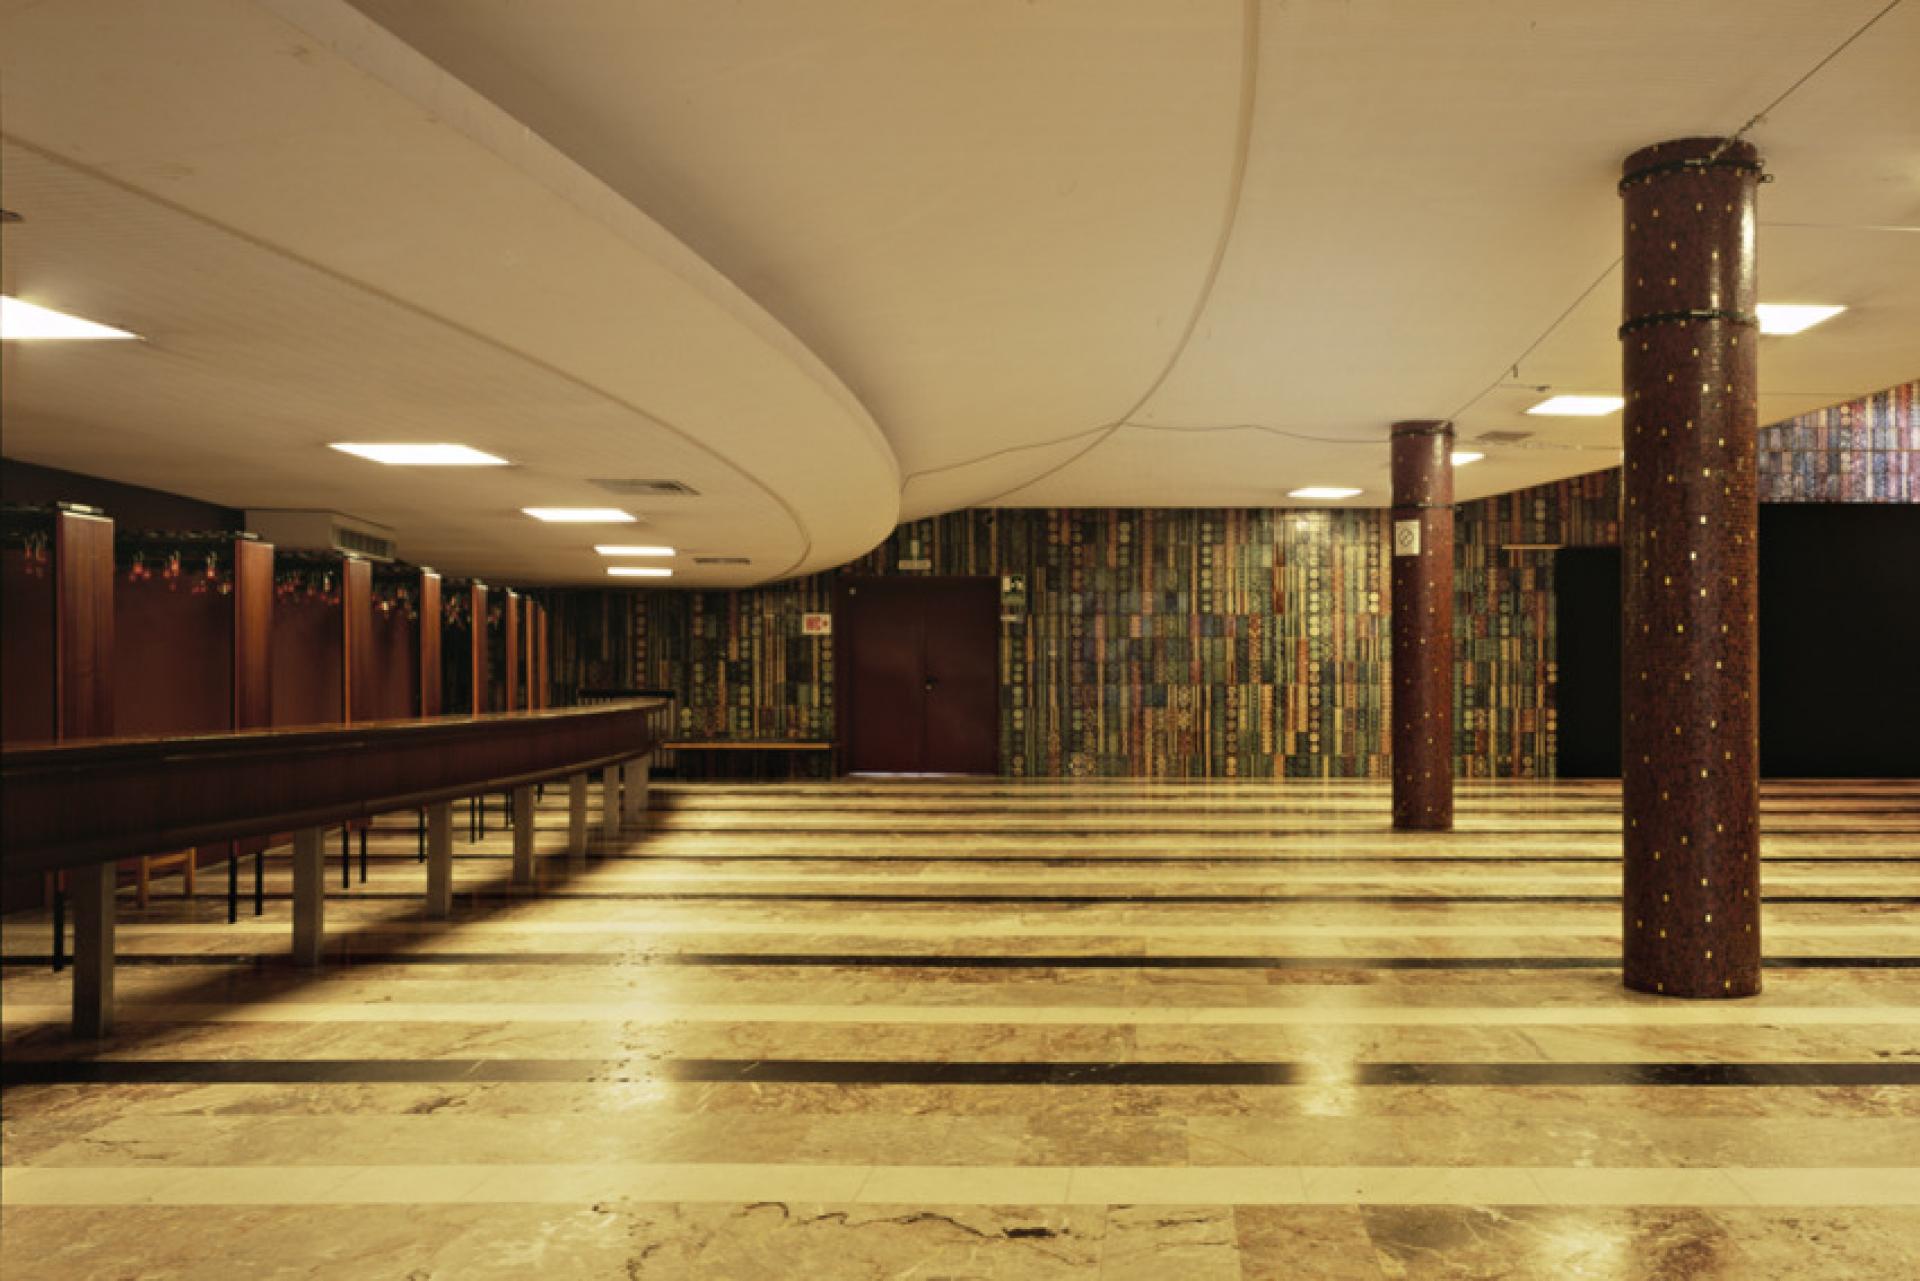 The foyer of Cultural Centre in Trieste. | Photo via Theatre Architecture